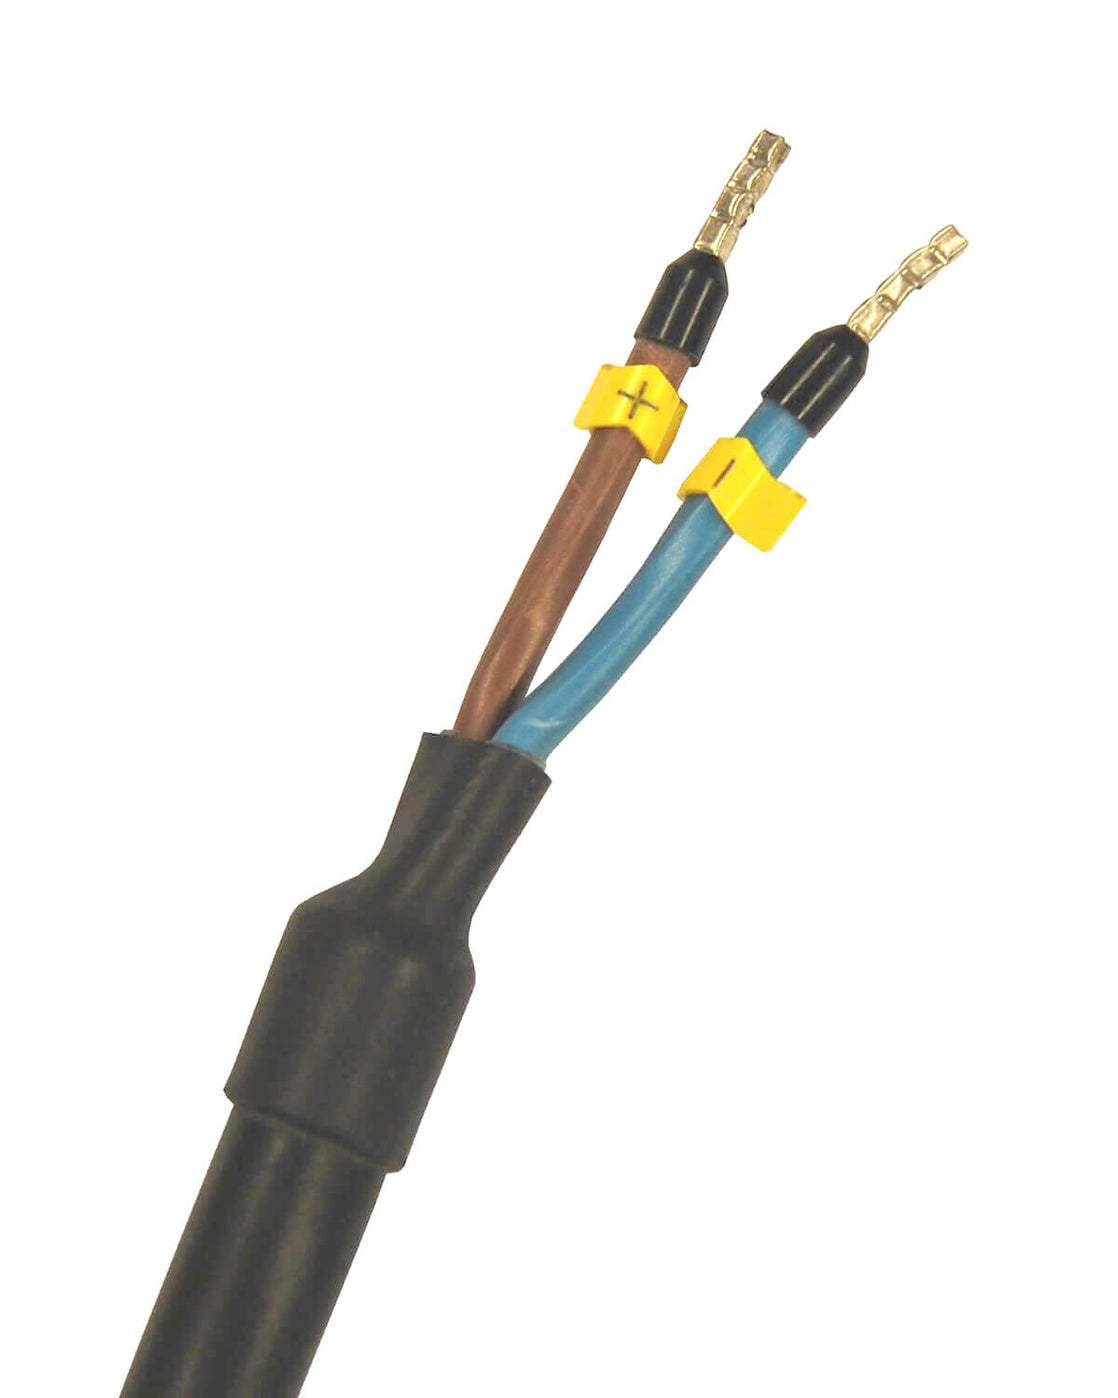 Ein schwarz-gelbes Kabel mit zwei Adern, geeignet zum Anschluss einer PURION 400 12 V/24 V DC Basic UV-C-Lampe der PURION GmbH.